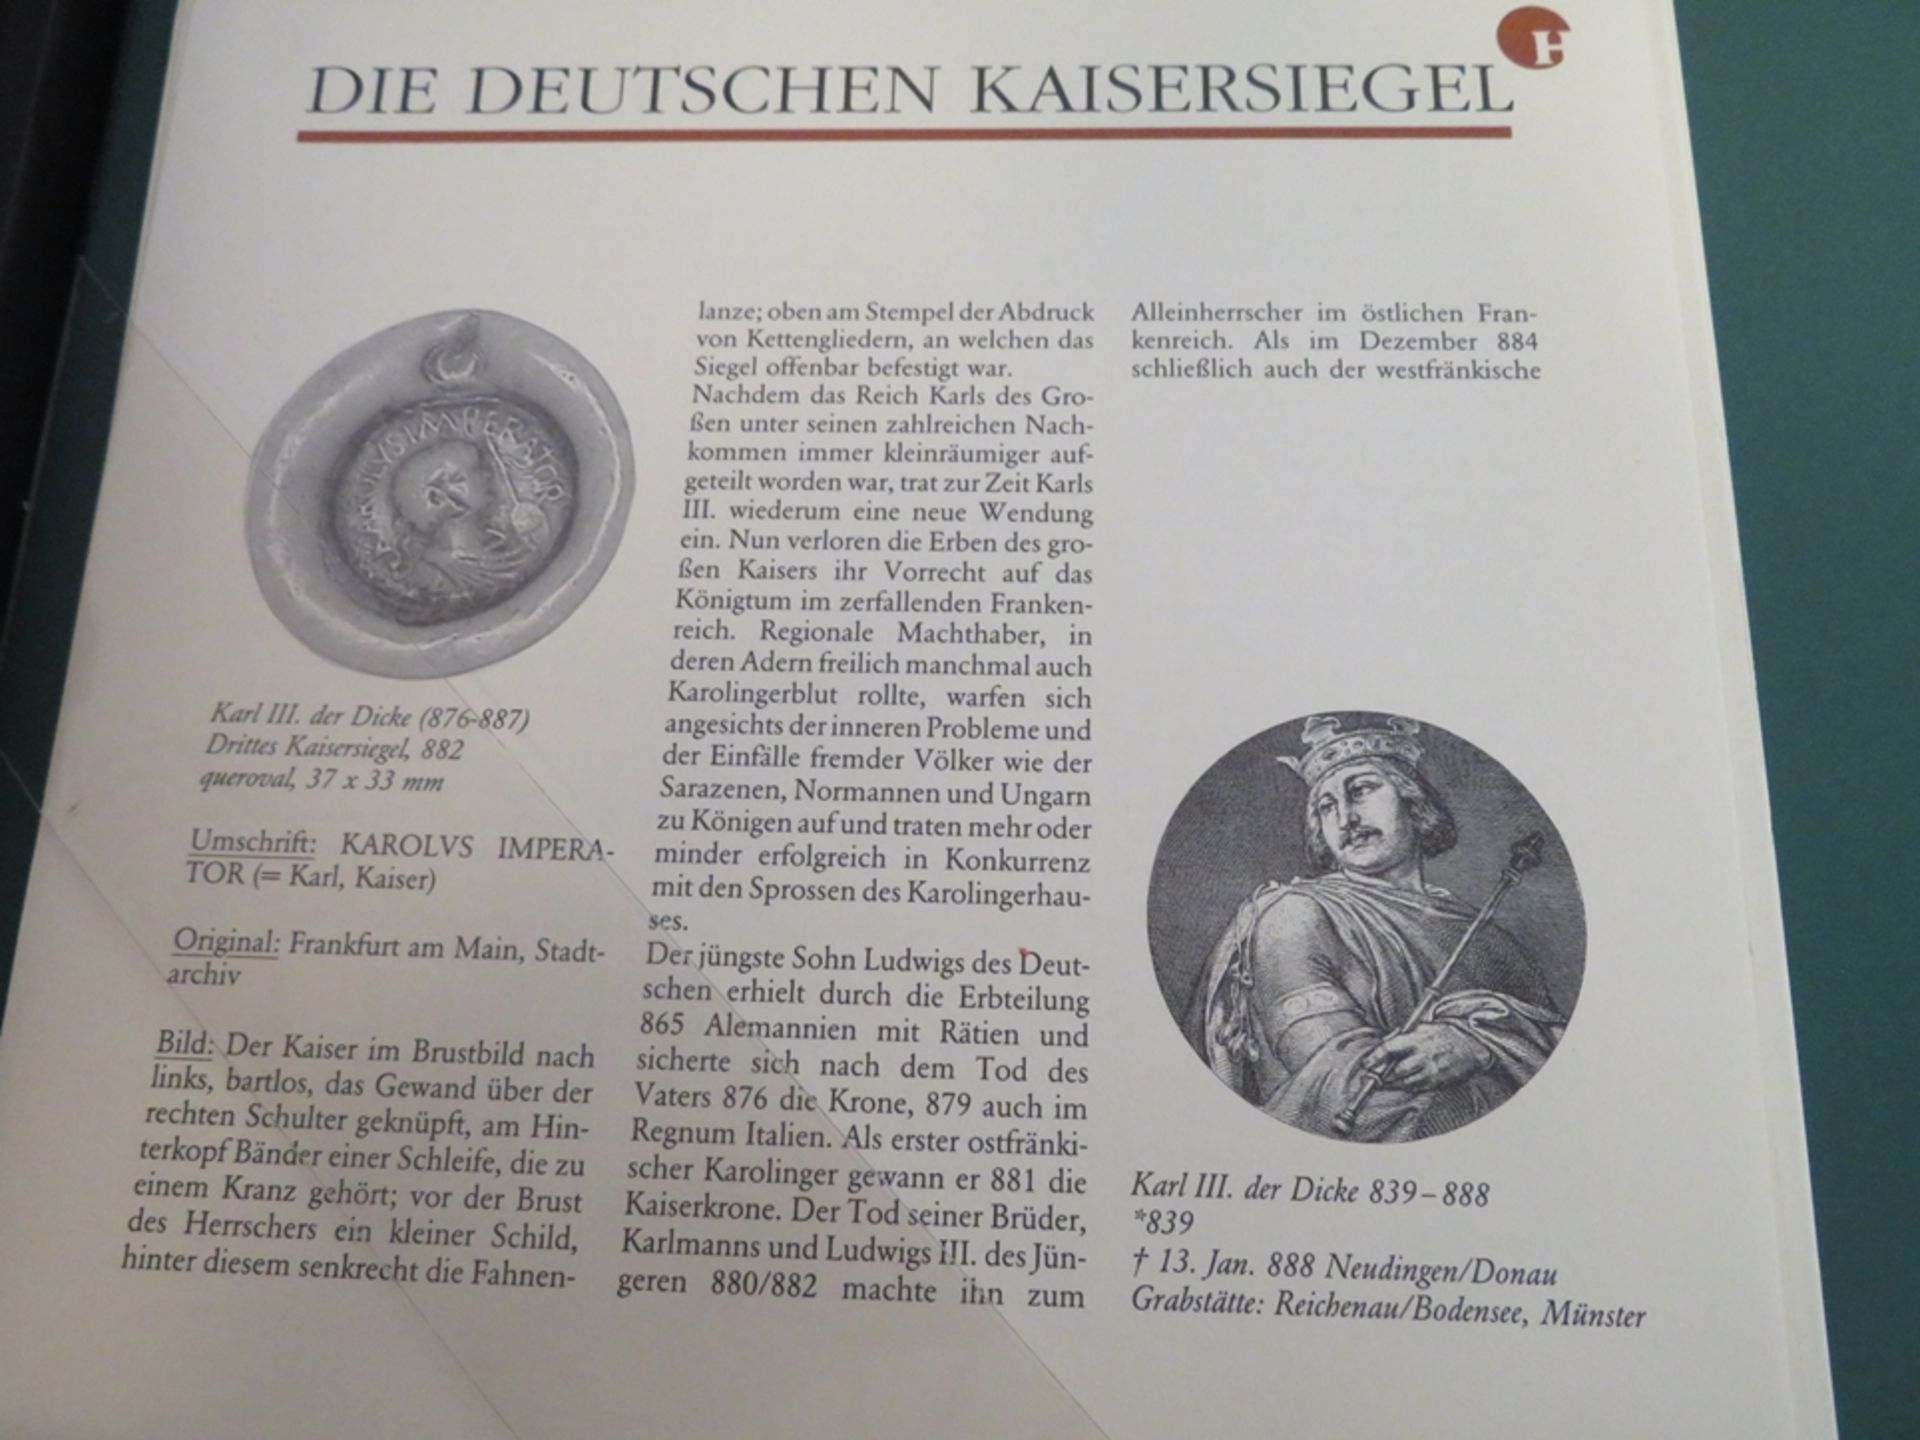 Die deutschen Kaisersiegel, 70 Original-Wachsabdrücke, Historia Verlag Freiburg, in 6 Kassetten. - Image 4 of 4